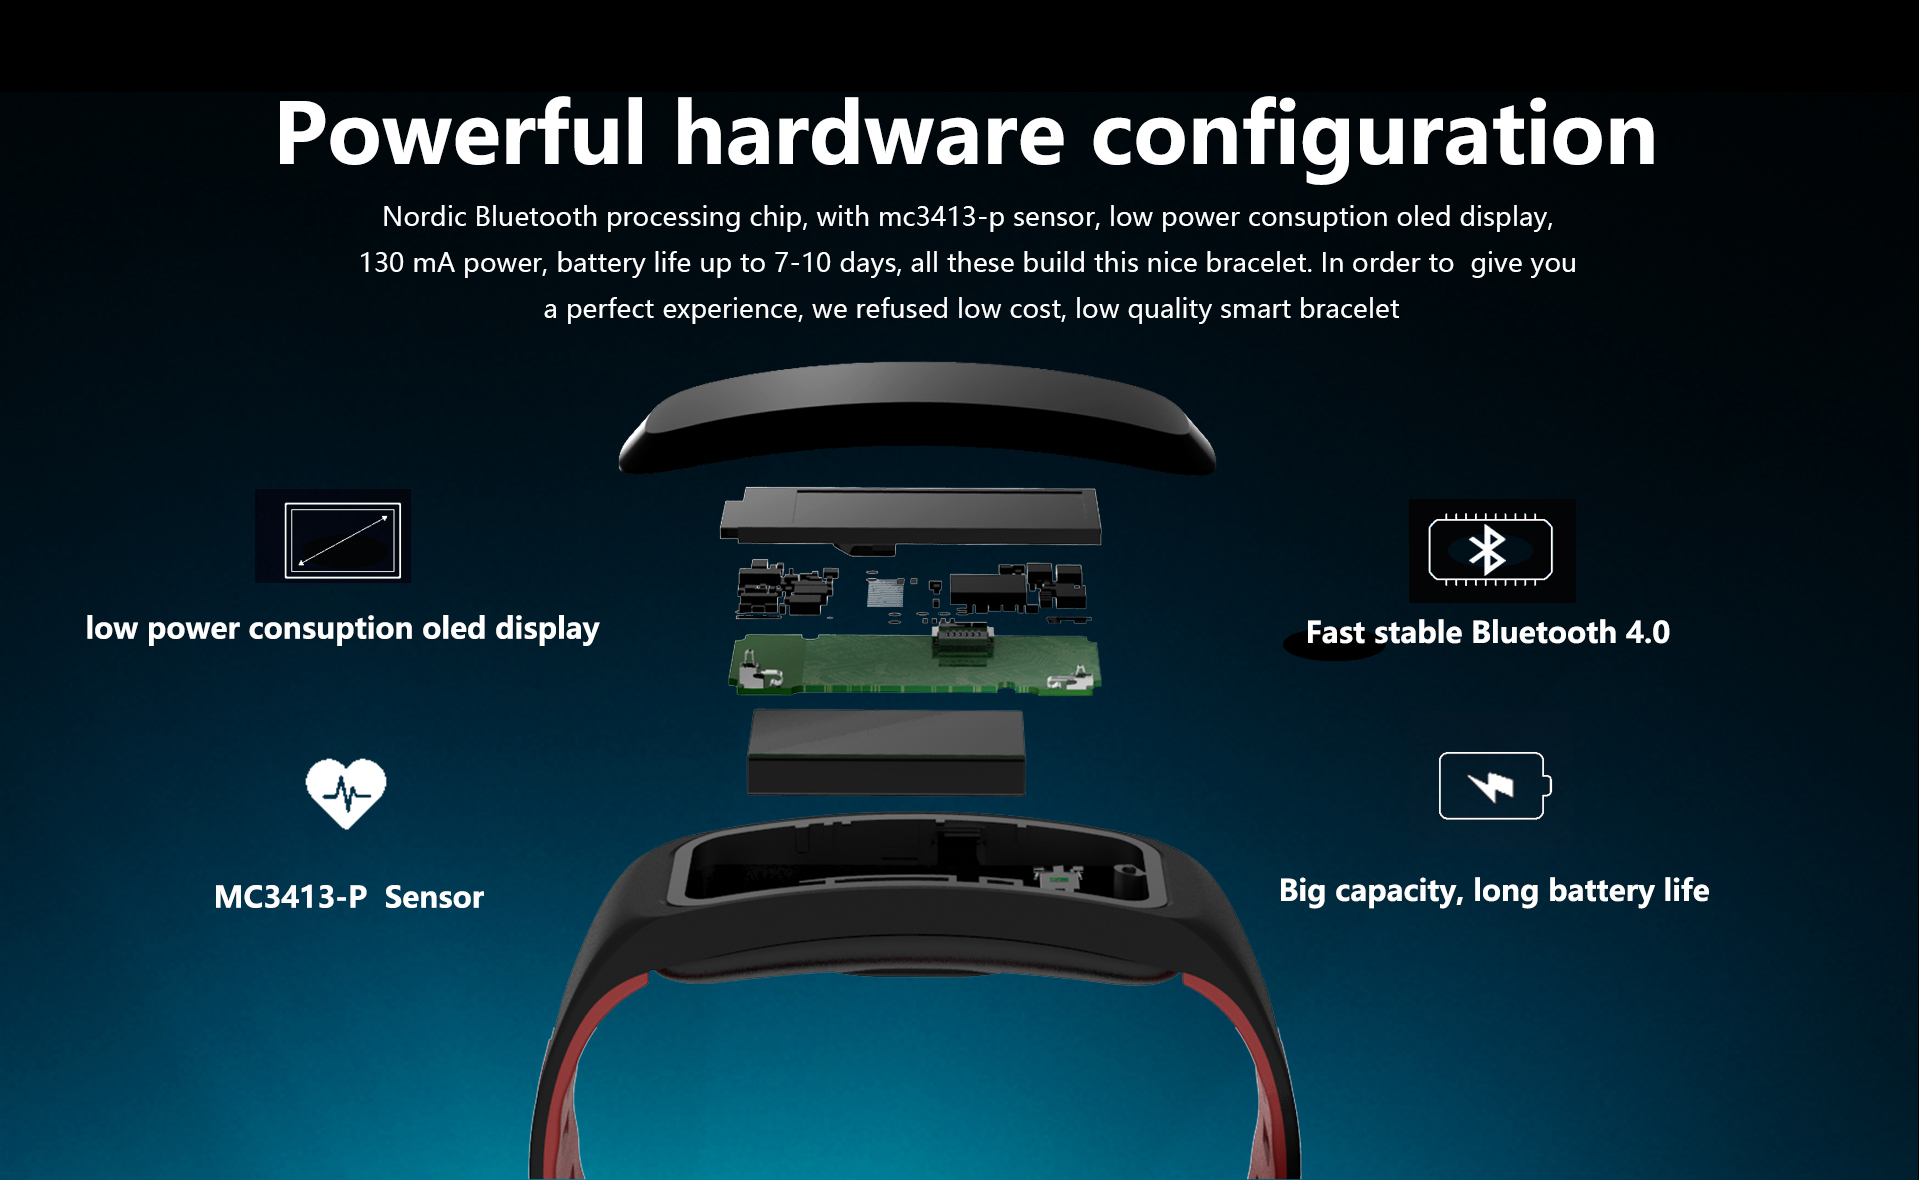 Bracelete Smartwatch F4 com Bluetooth 4.0 - IP68 à prova d’água, tenha todas as funcionalidades do seu Smartphone - Android ou Iphone no seu pulso.